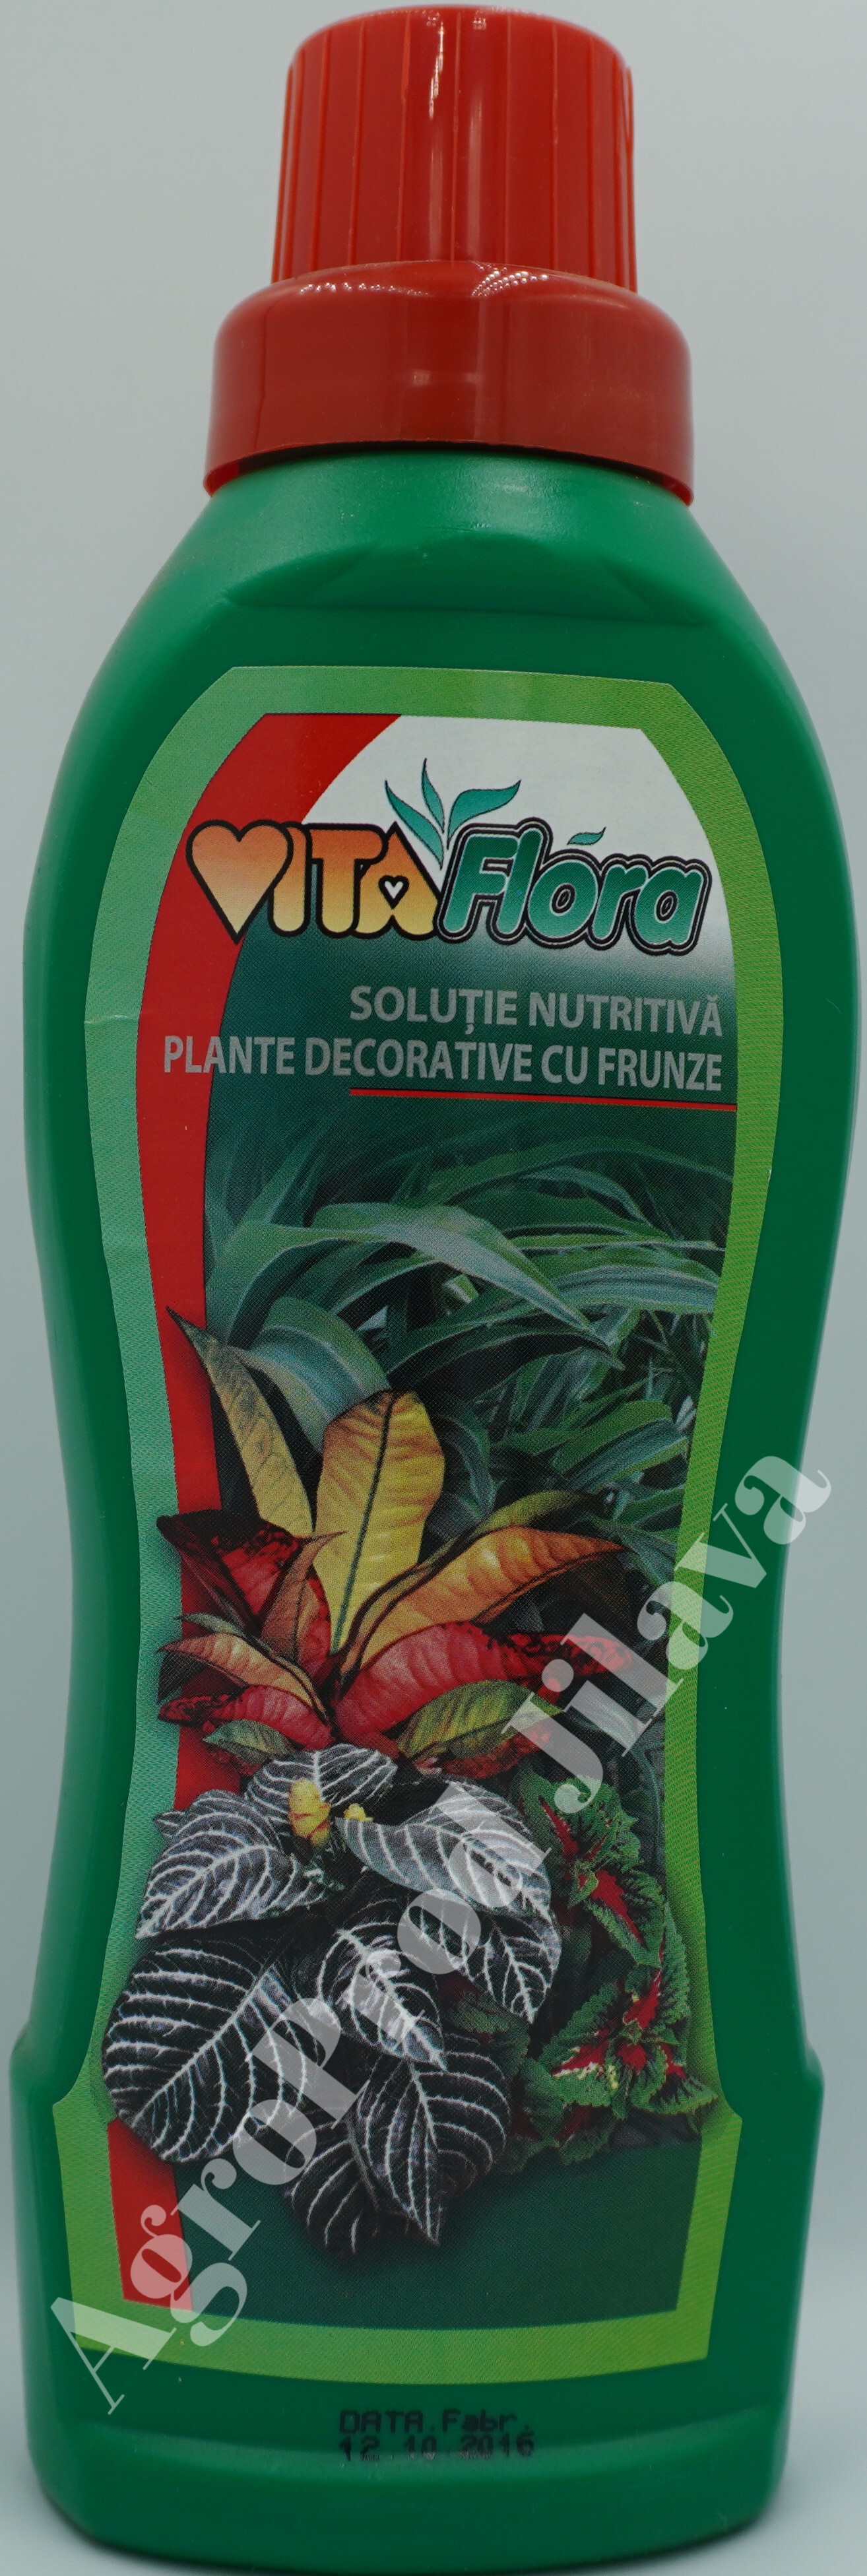 Vitaflora pentru plante cu frunze 100ml